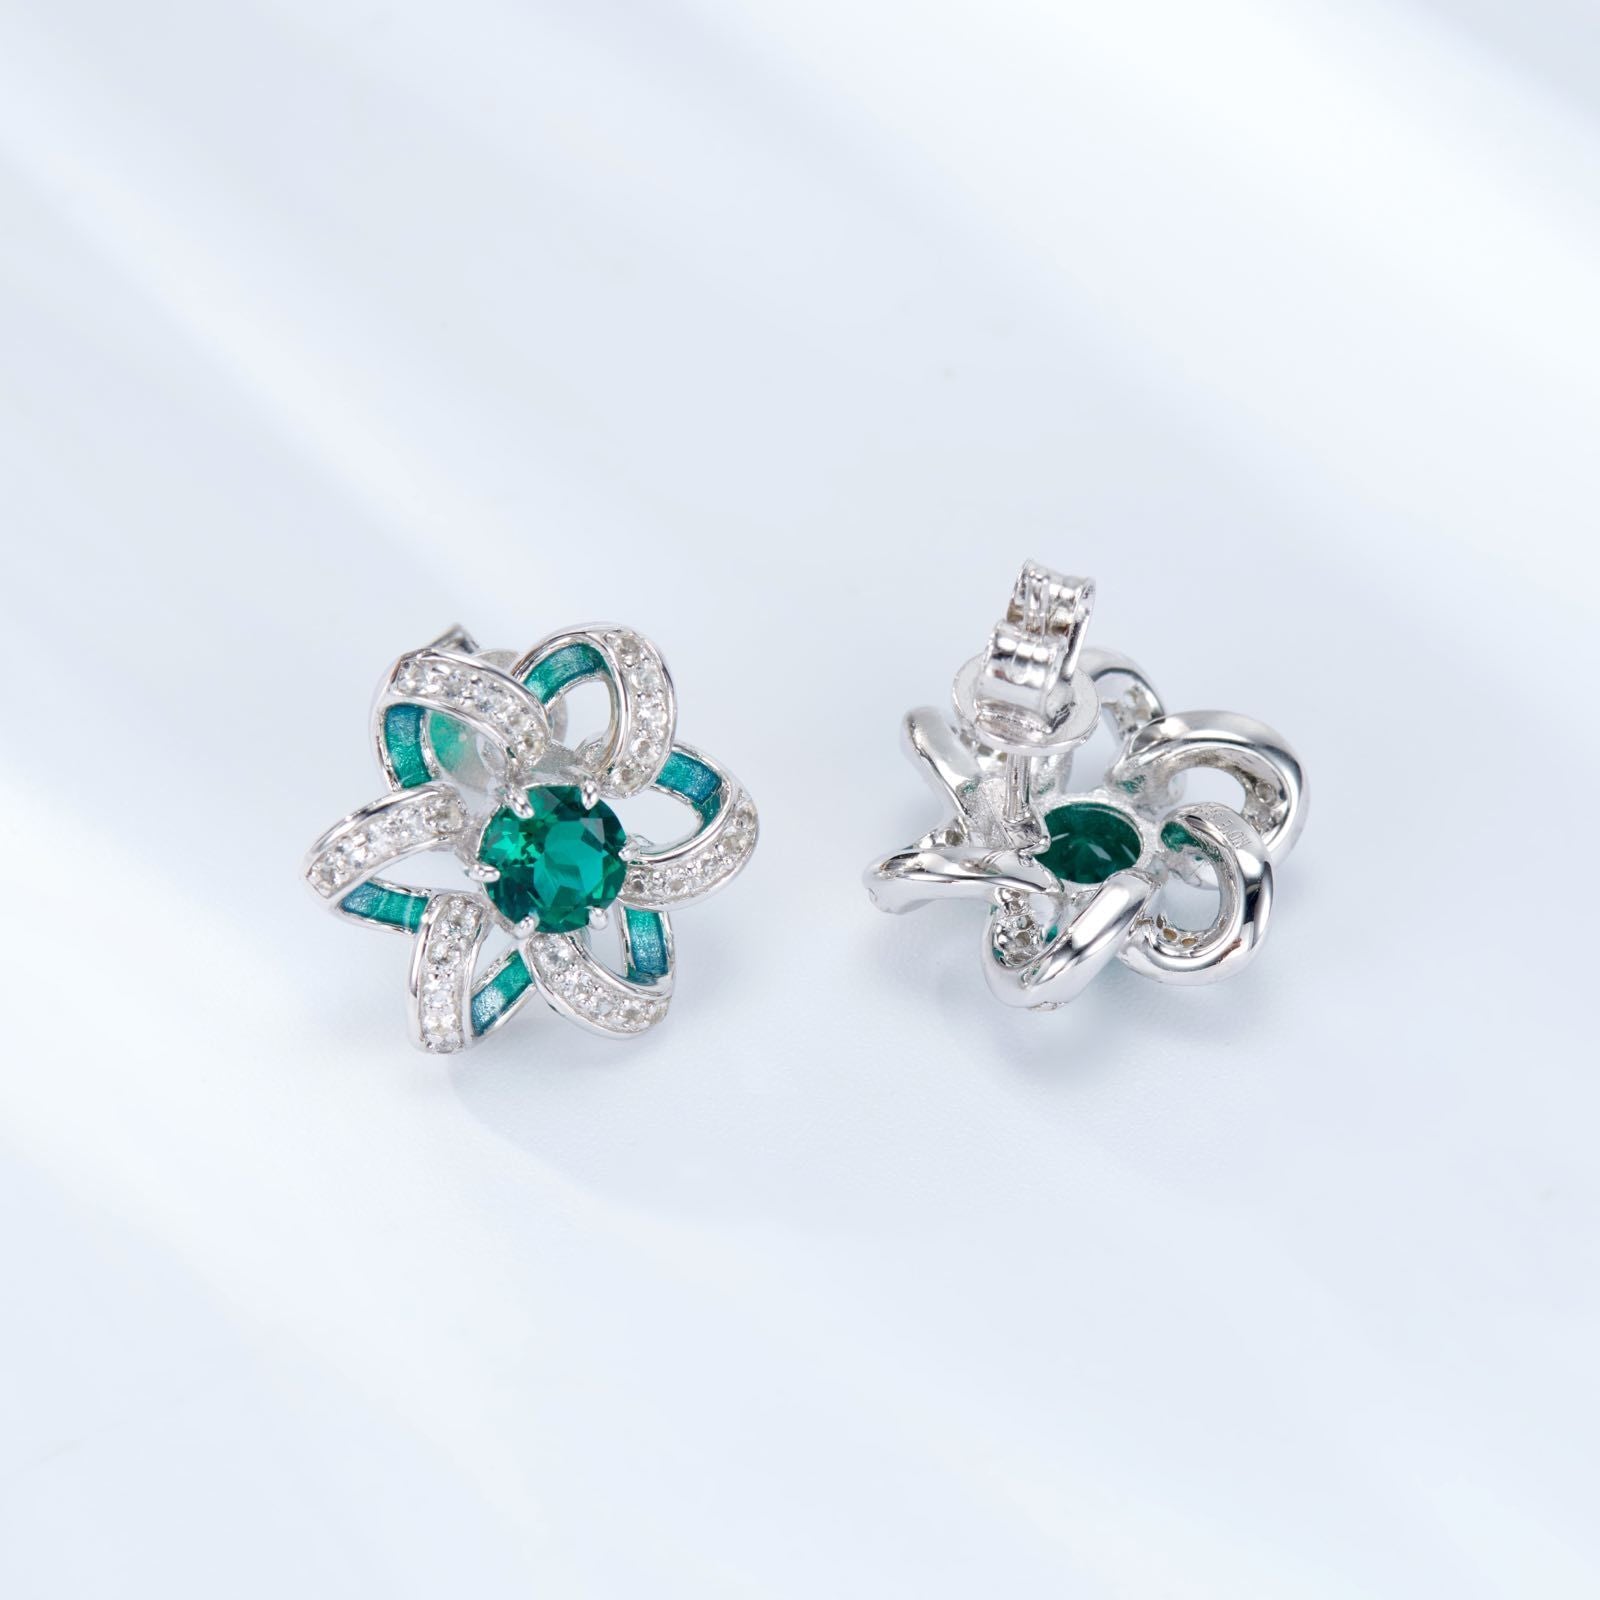 Green Flower Enamel Silver Studs Earrings for Women